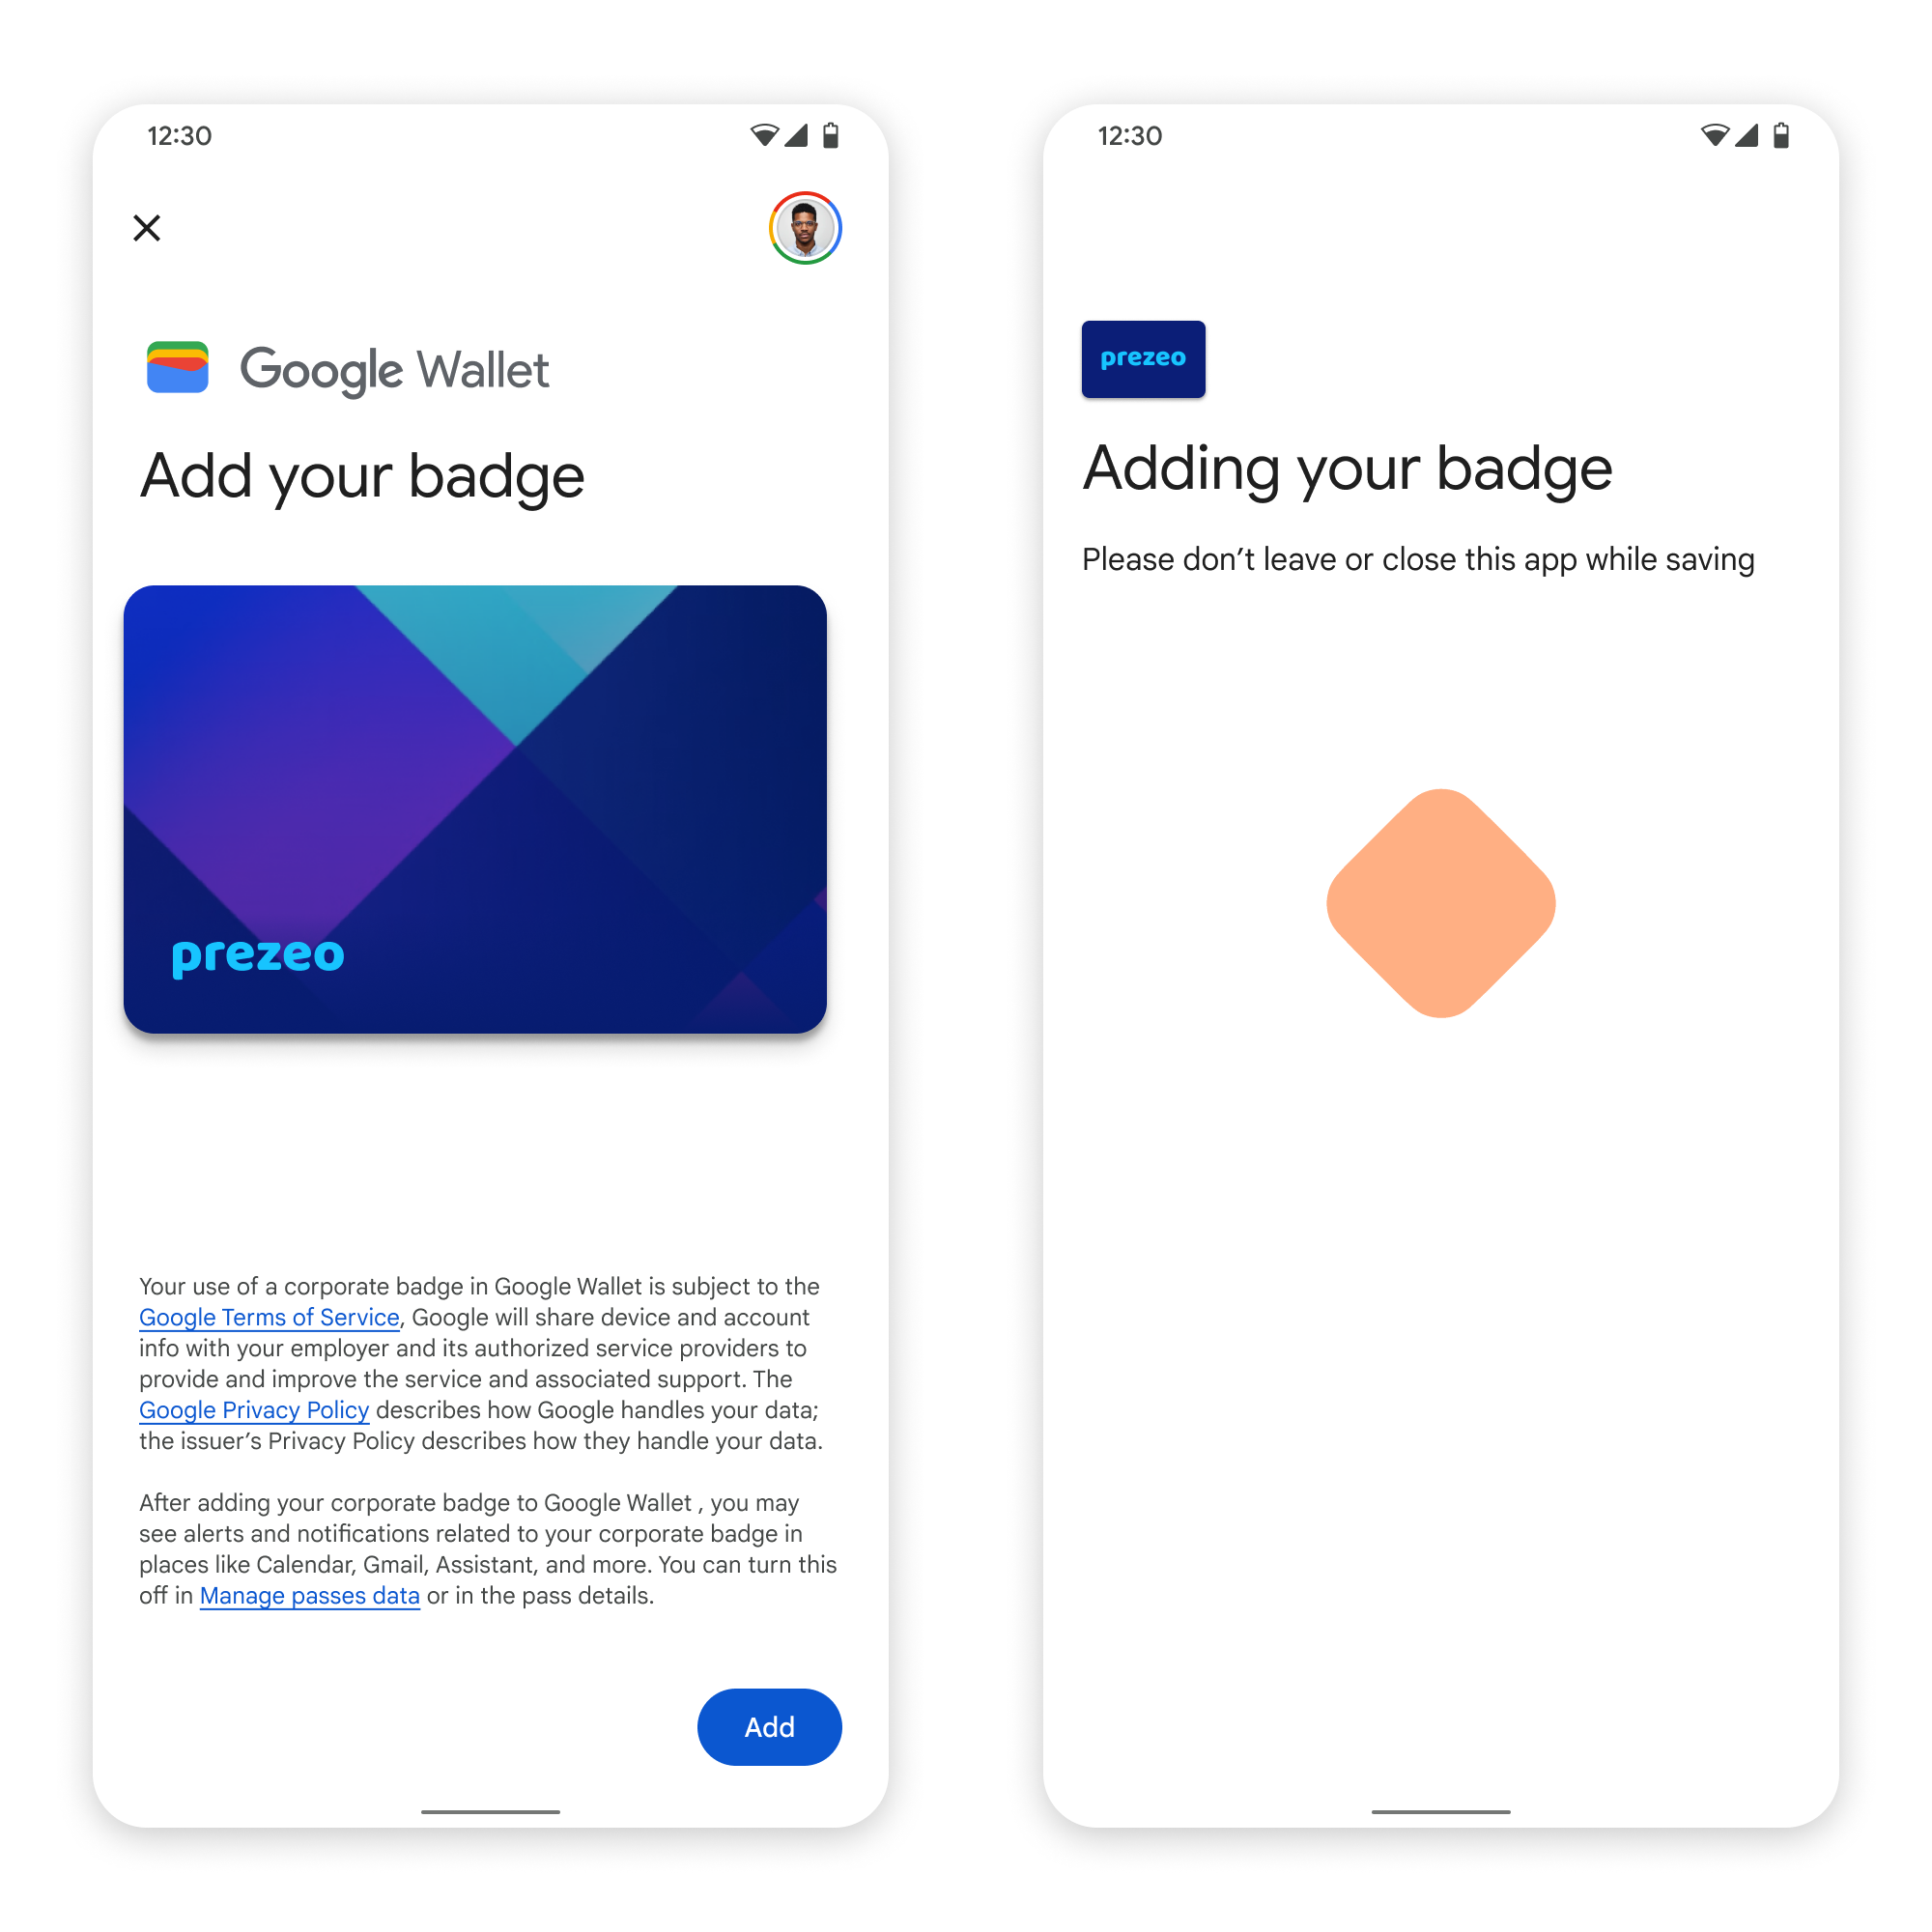 Trong màn hình đầu tiên, ứng dụng kết nối với Google Wallet. Ngang bằng
       màn hình thứ hai, người dùng chấp nhận Điều khoản dịch vụ và tiếp tục.